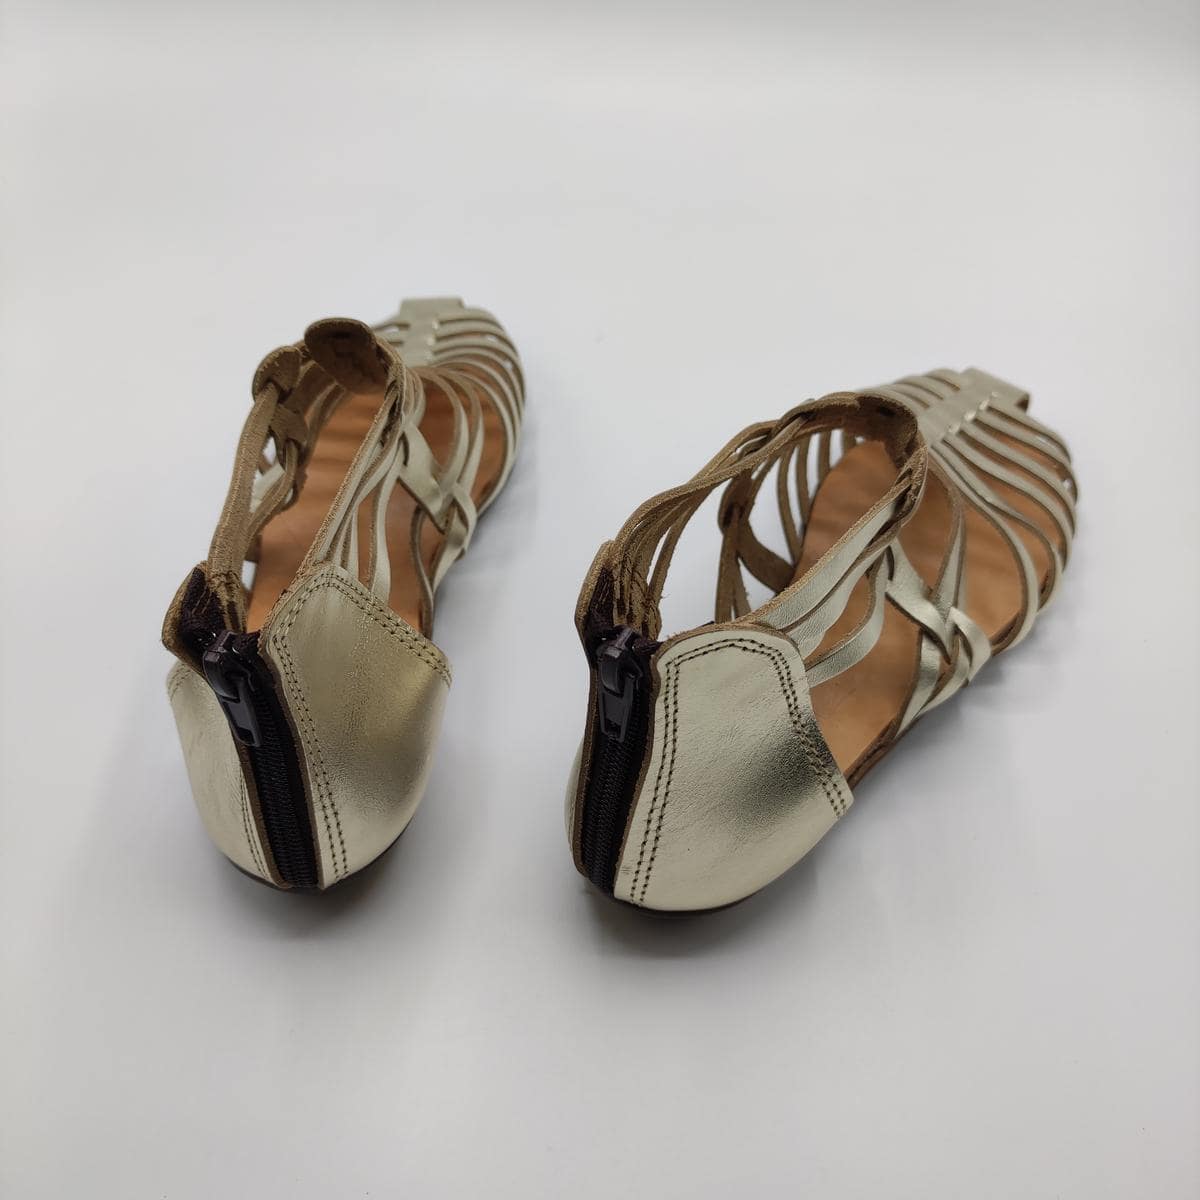 Greek Sandals Ladies Dance Shoes Size 8 